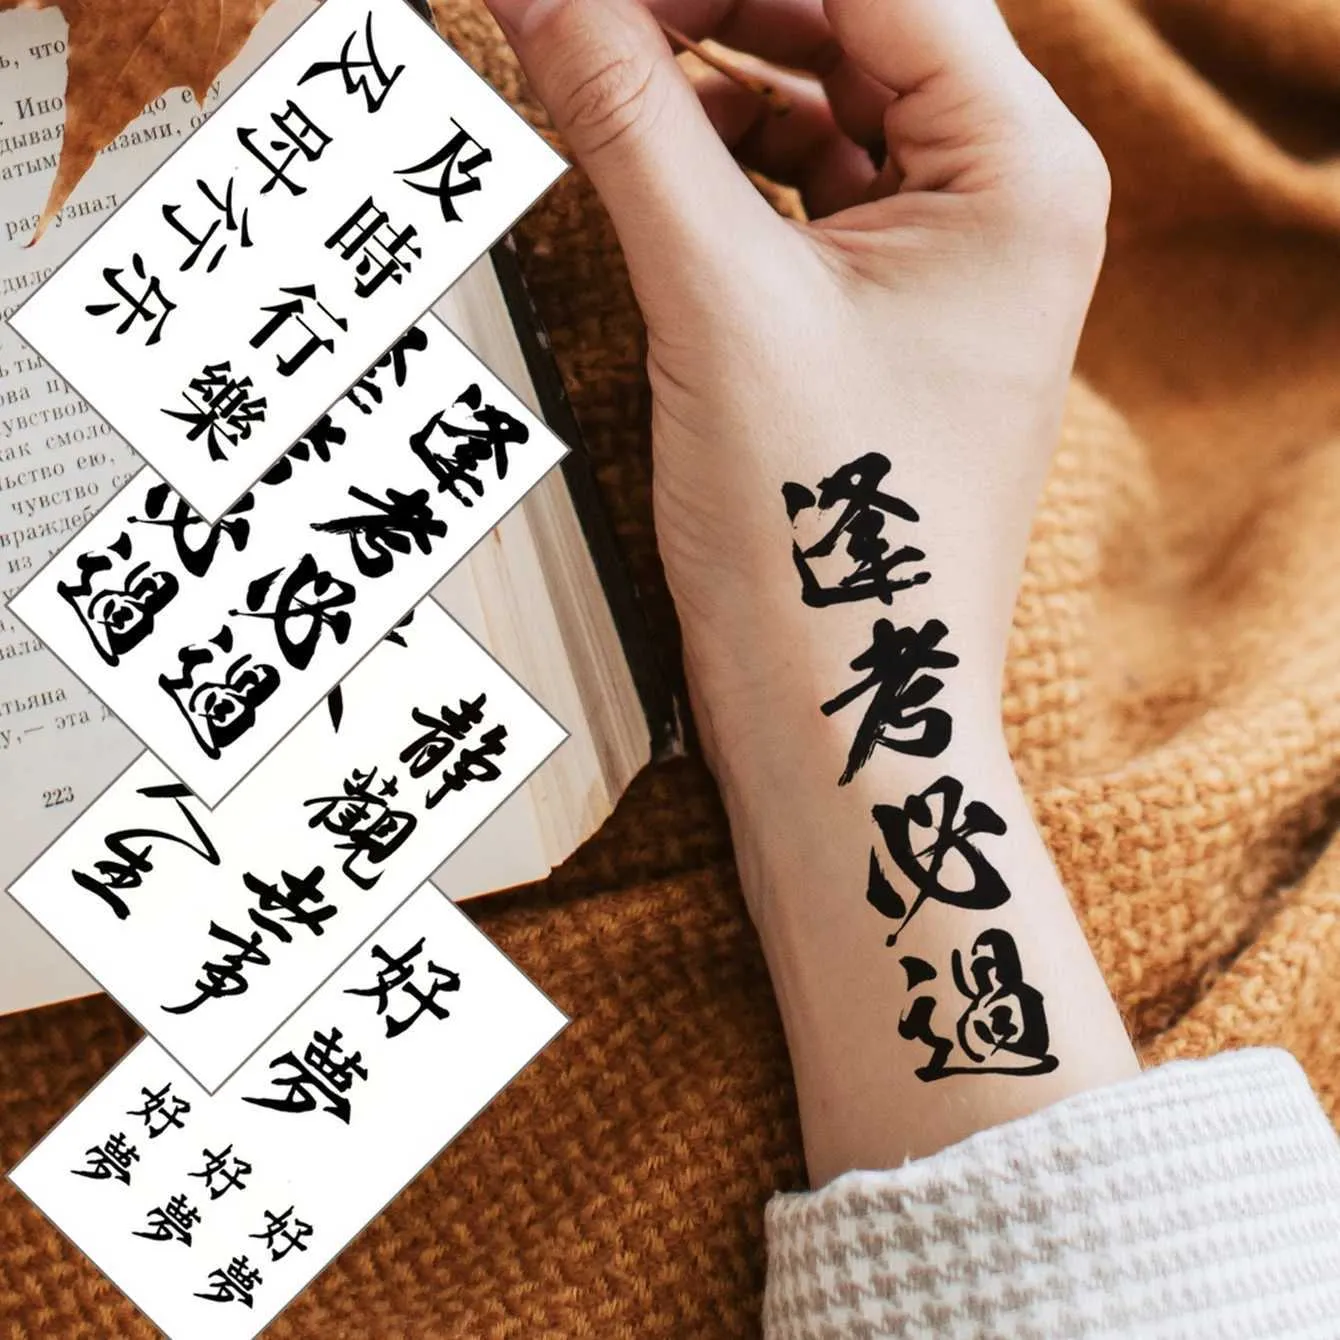 Transferma tatuaggio impermeabile temporaneo tatuaggio adesivo cinese caratteri cinesi tatto flash tatoo tatua